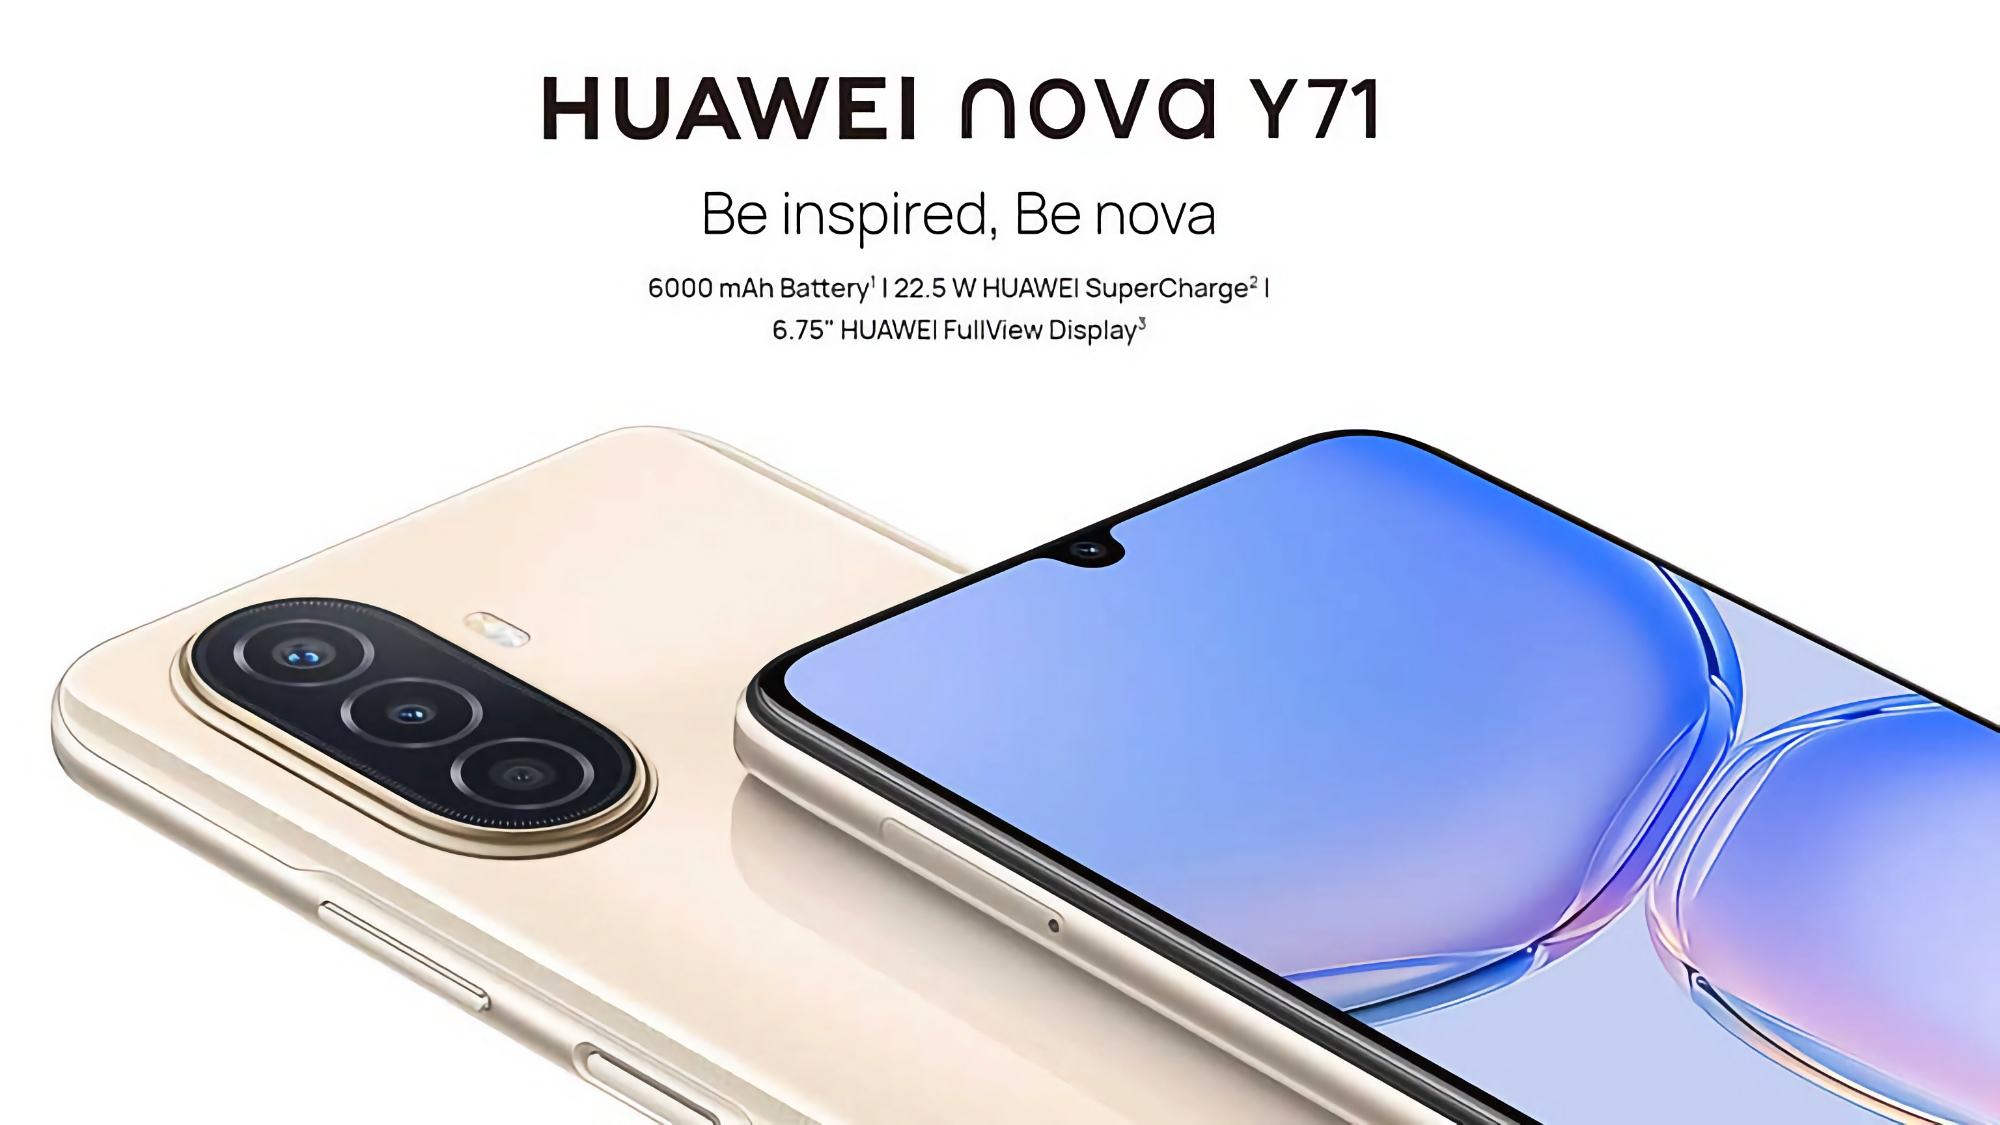 Huawei Nova Y71 : écran de 6,75 pouces, appareil photo de 48 MP et batterie de 6000 mAh